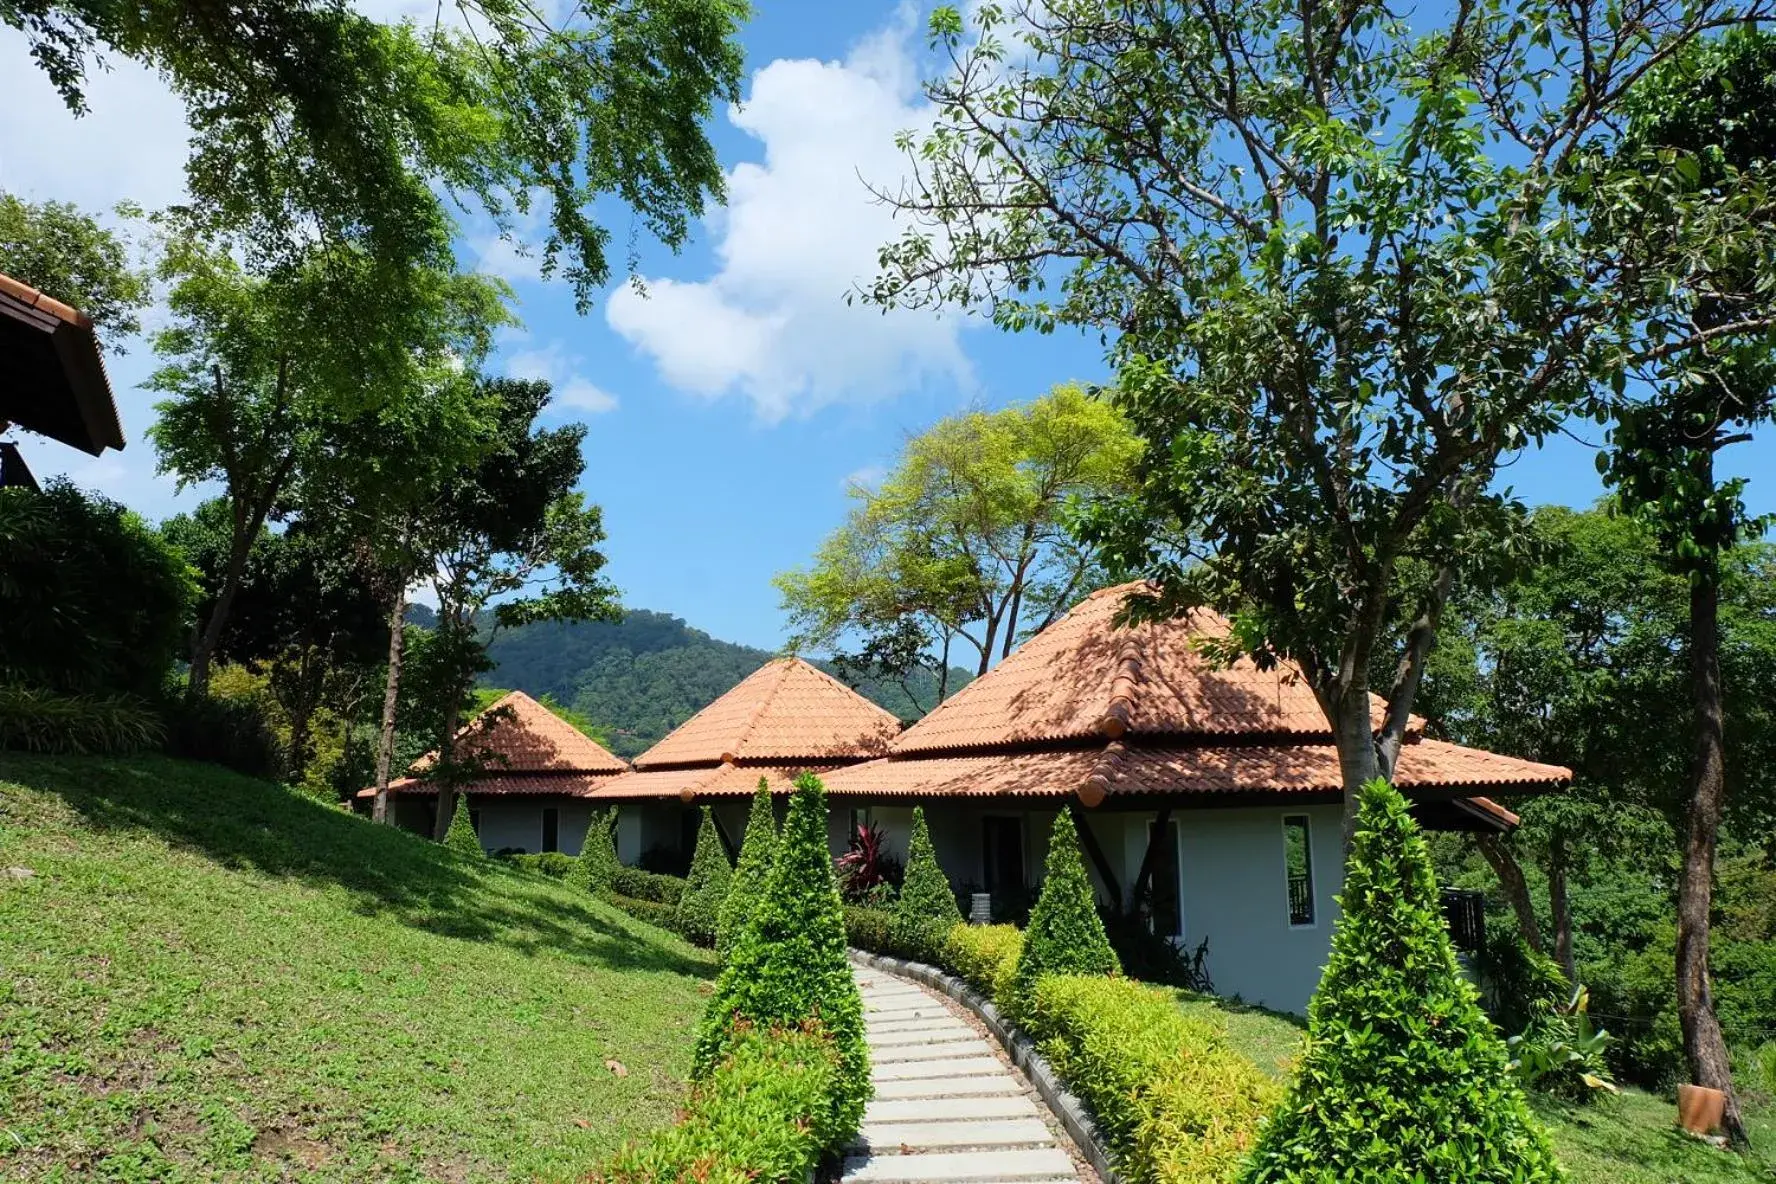 Property Building in Bakantiang Resort